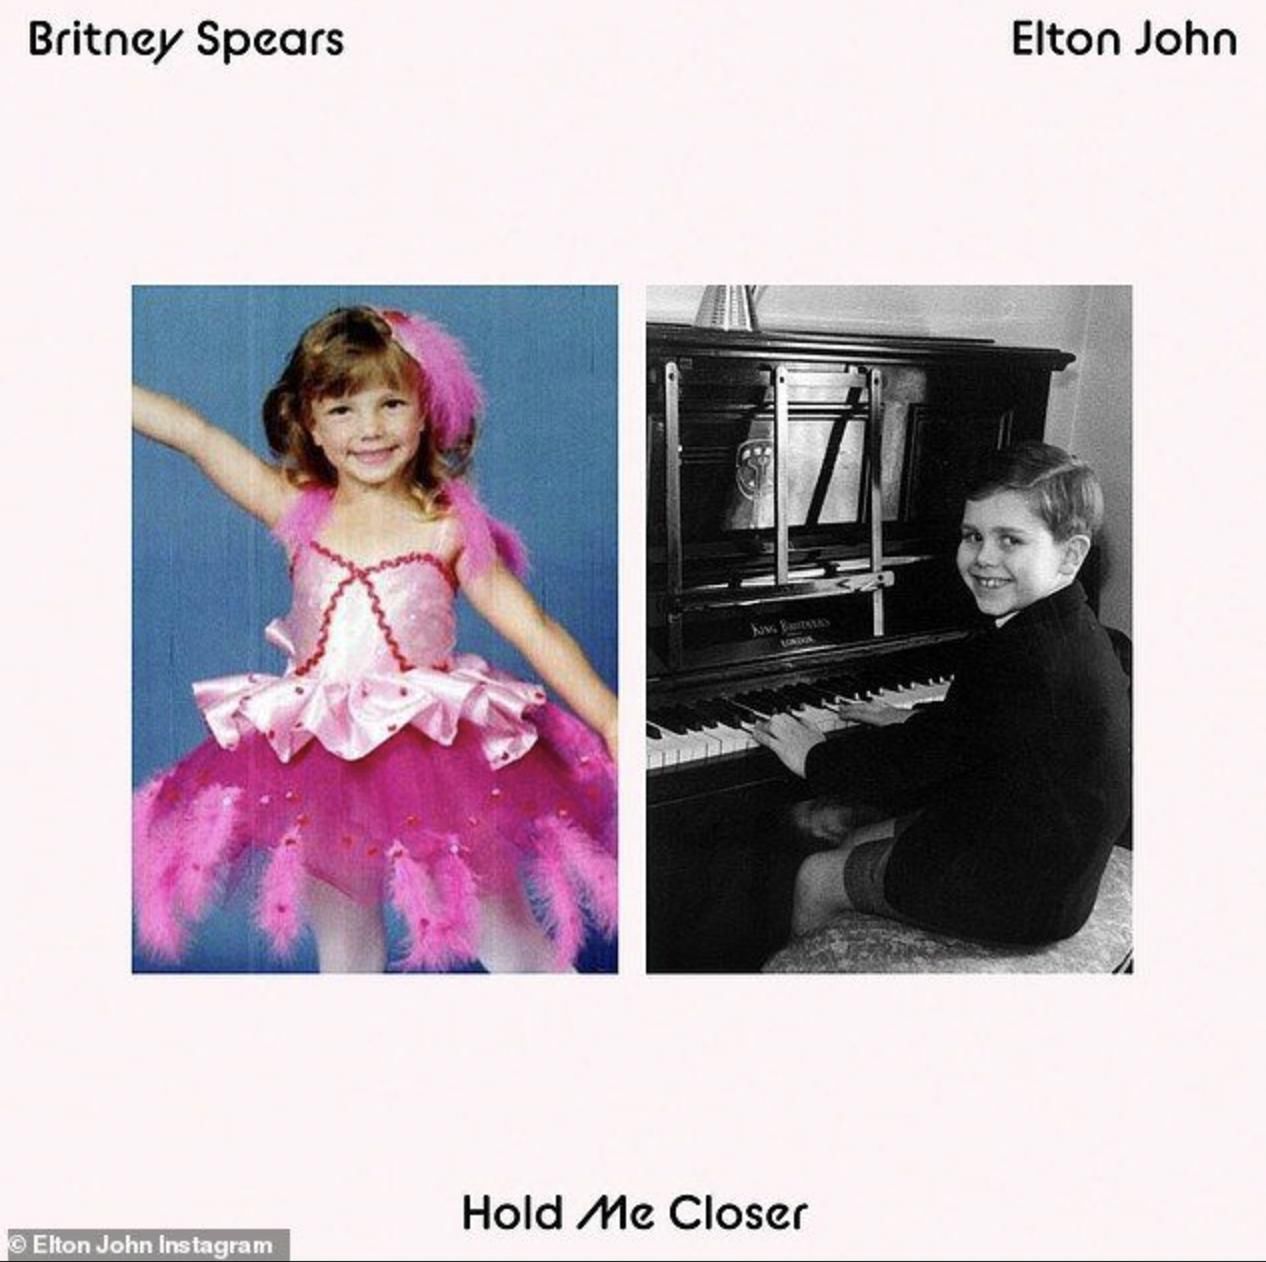 Okładka singla Hold me closer Britney Spears i Eltona Johna